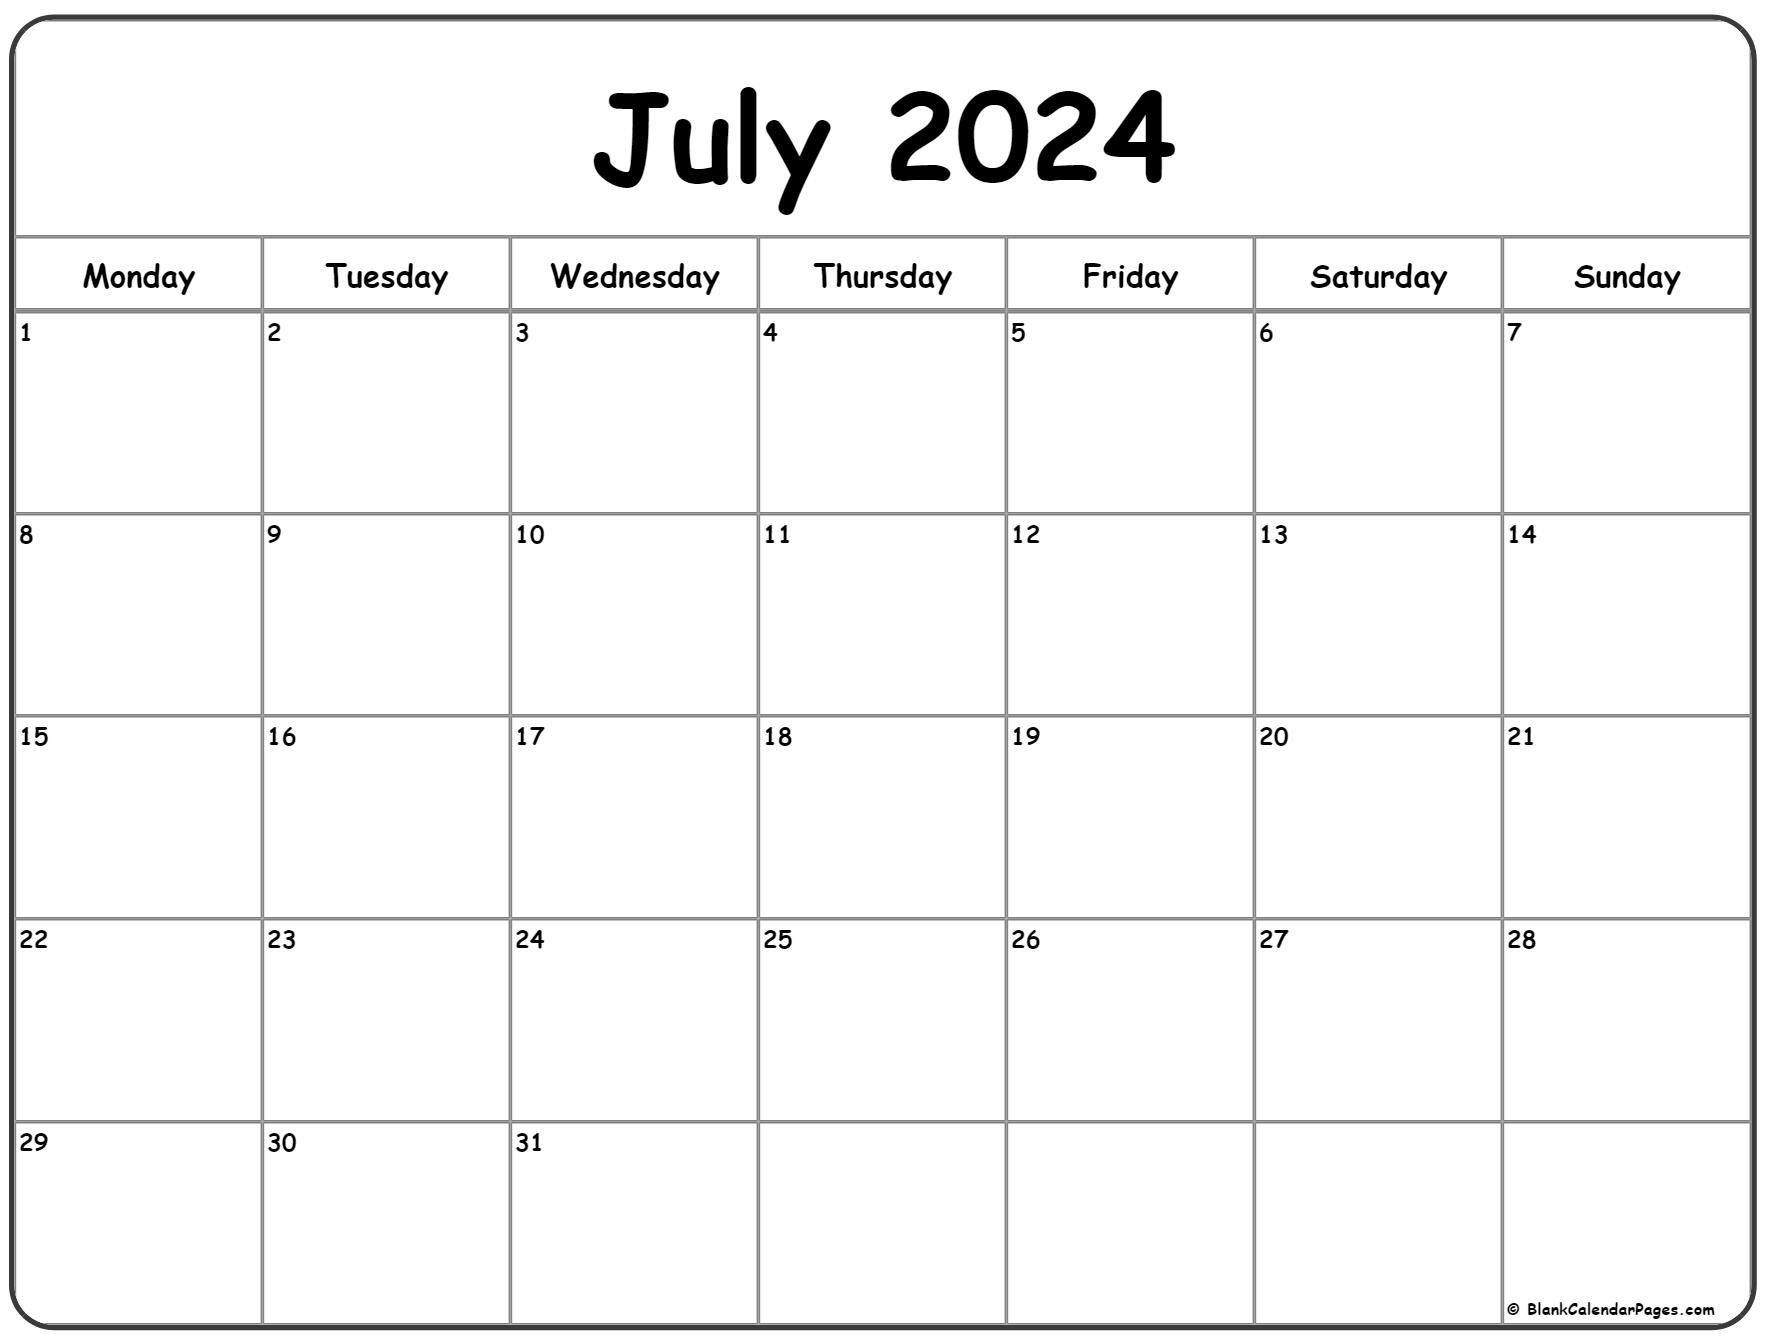 July 2022 Monday calendar. Monday to Sunday